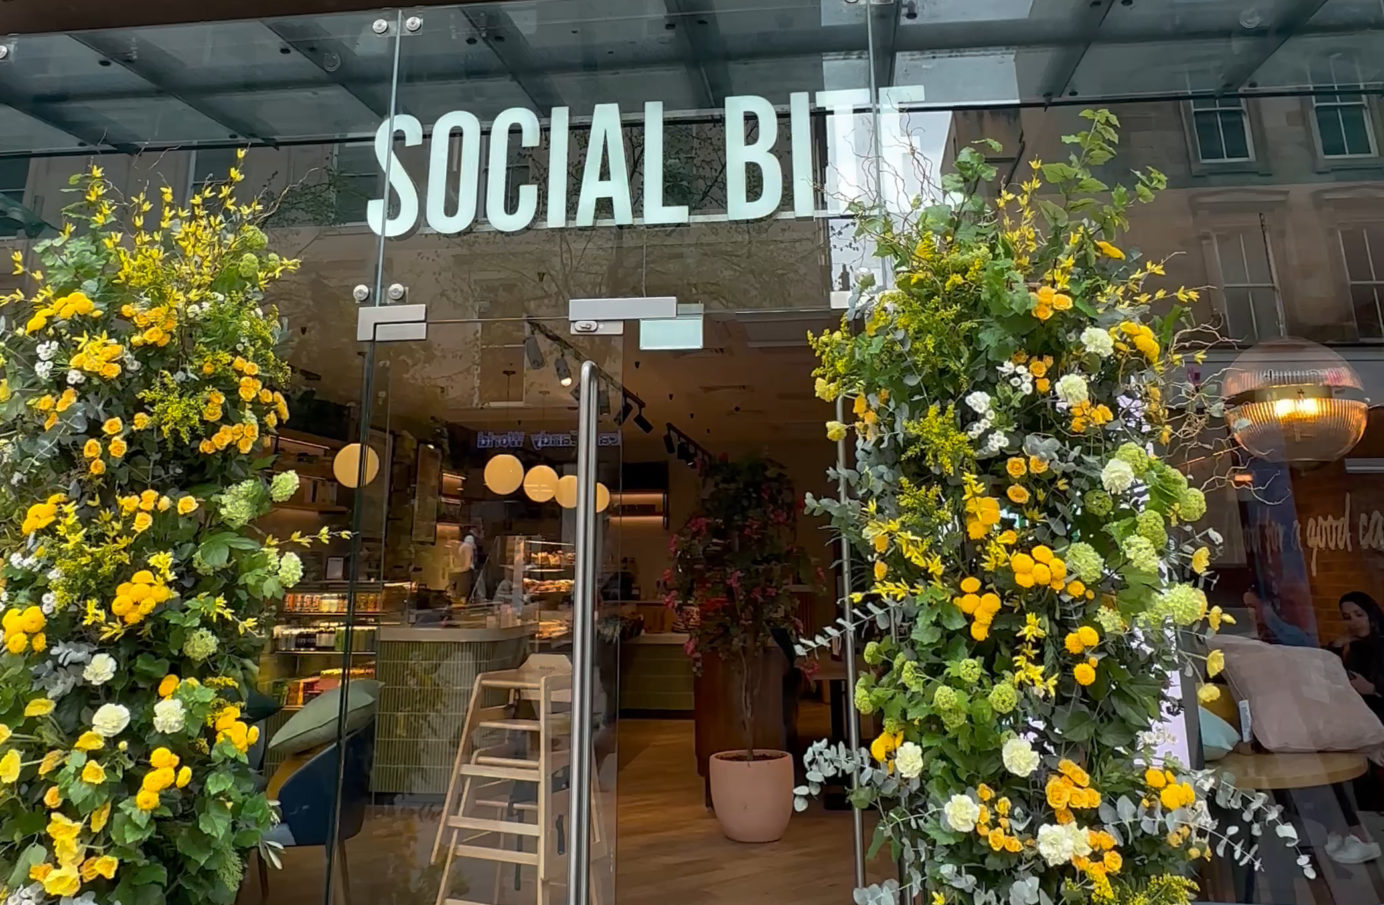 Scottish entrepreneur John Watson revealed as backer of Glasgow Social Bite cafe